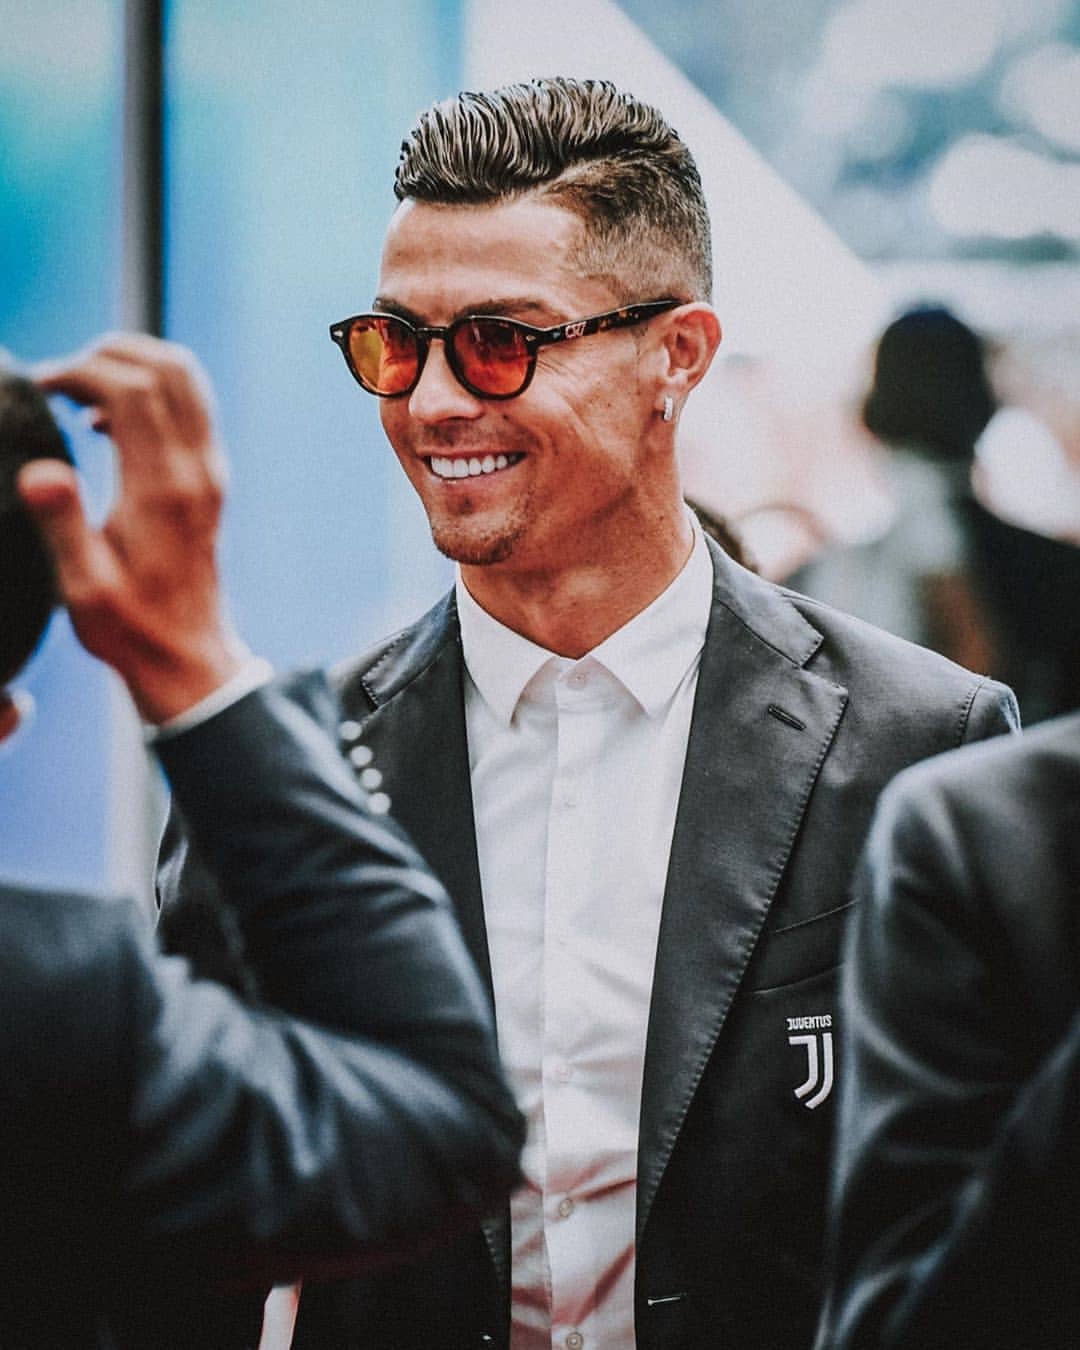 Cristiano Ronaldo là một trong những cầu thủ bóng đá nổi tiếng nhất thế giới với khuôn mặt điển trai và kĩ năng chơi bóng đỉnh cao. Những hình ảnh về Ronaldo sẽ khiến bạn say mê và cảm thấy kích thích. Hãy xem hình ảnh của anh để hiểu rõ hơn về ảnh hưởng của một ngôi sao sáng như Ronaldo.